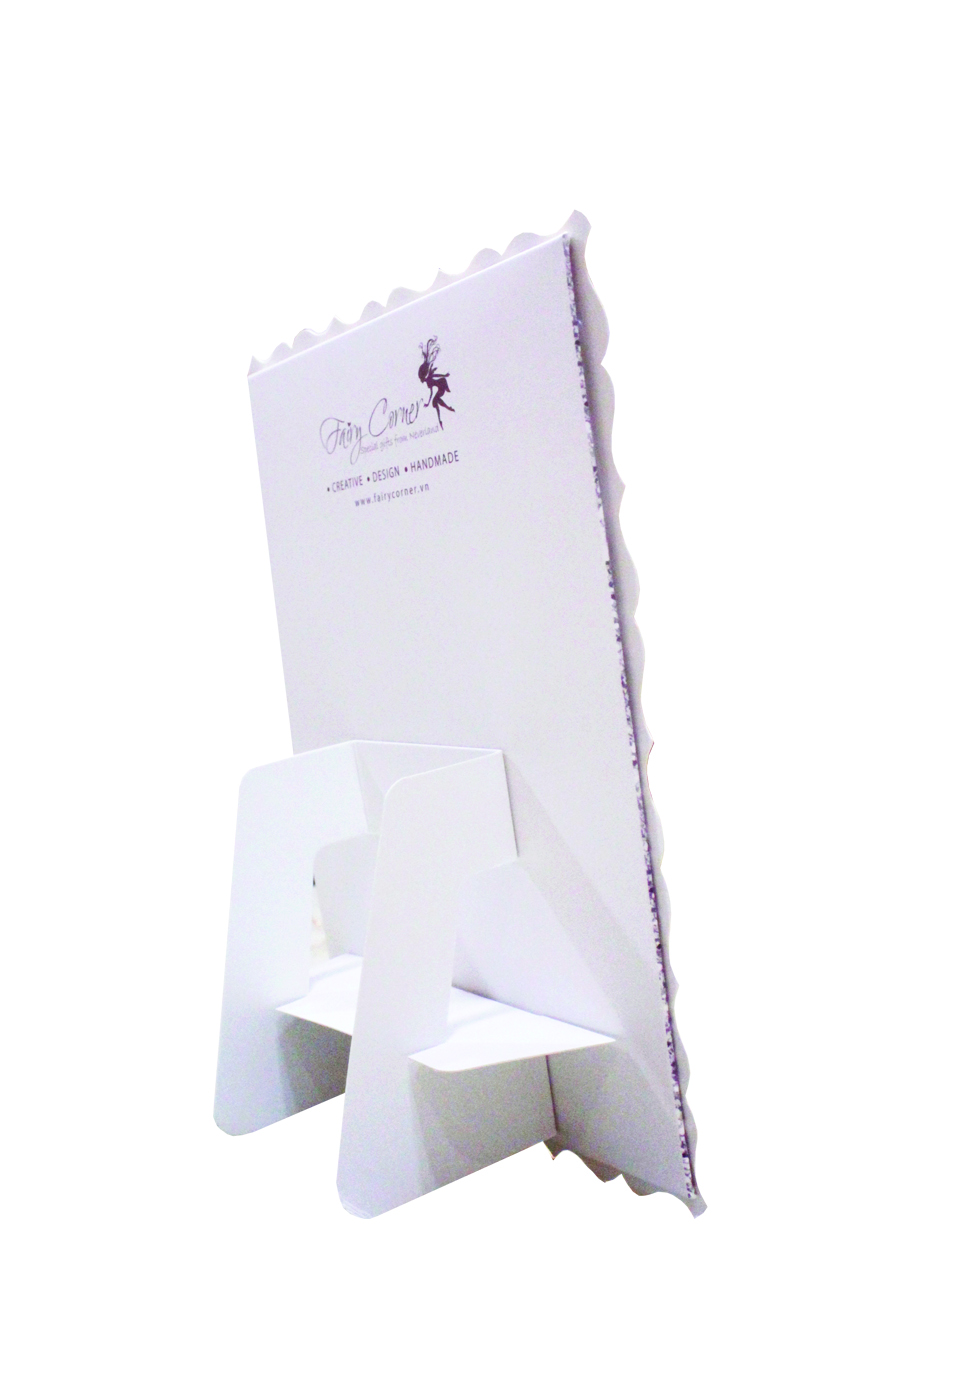 Khung hình giấy Fairy Corner chấm bi kích thước 13×18 (dạng đứng để bàn)